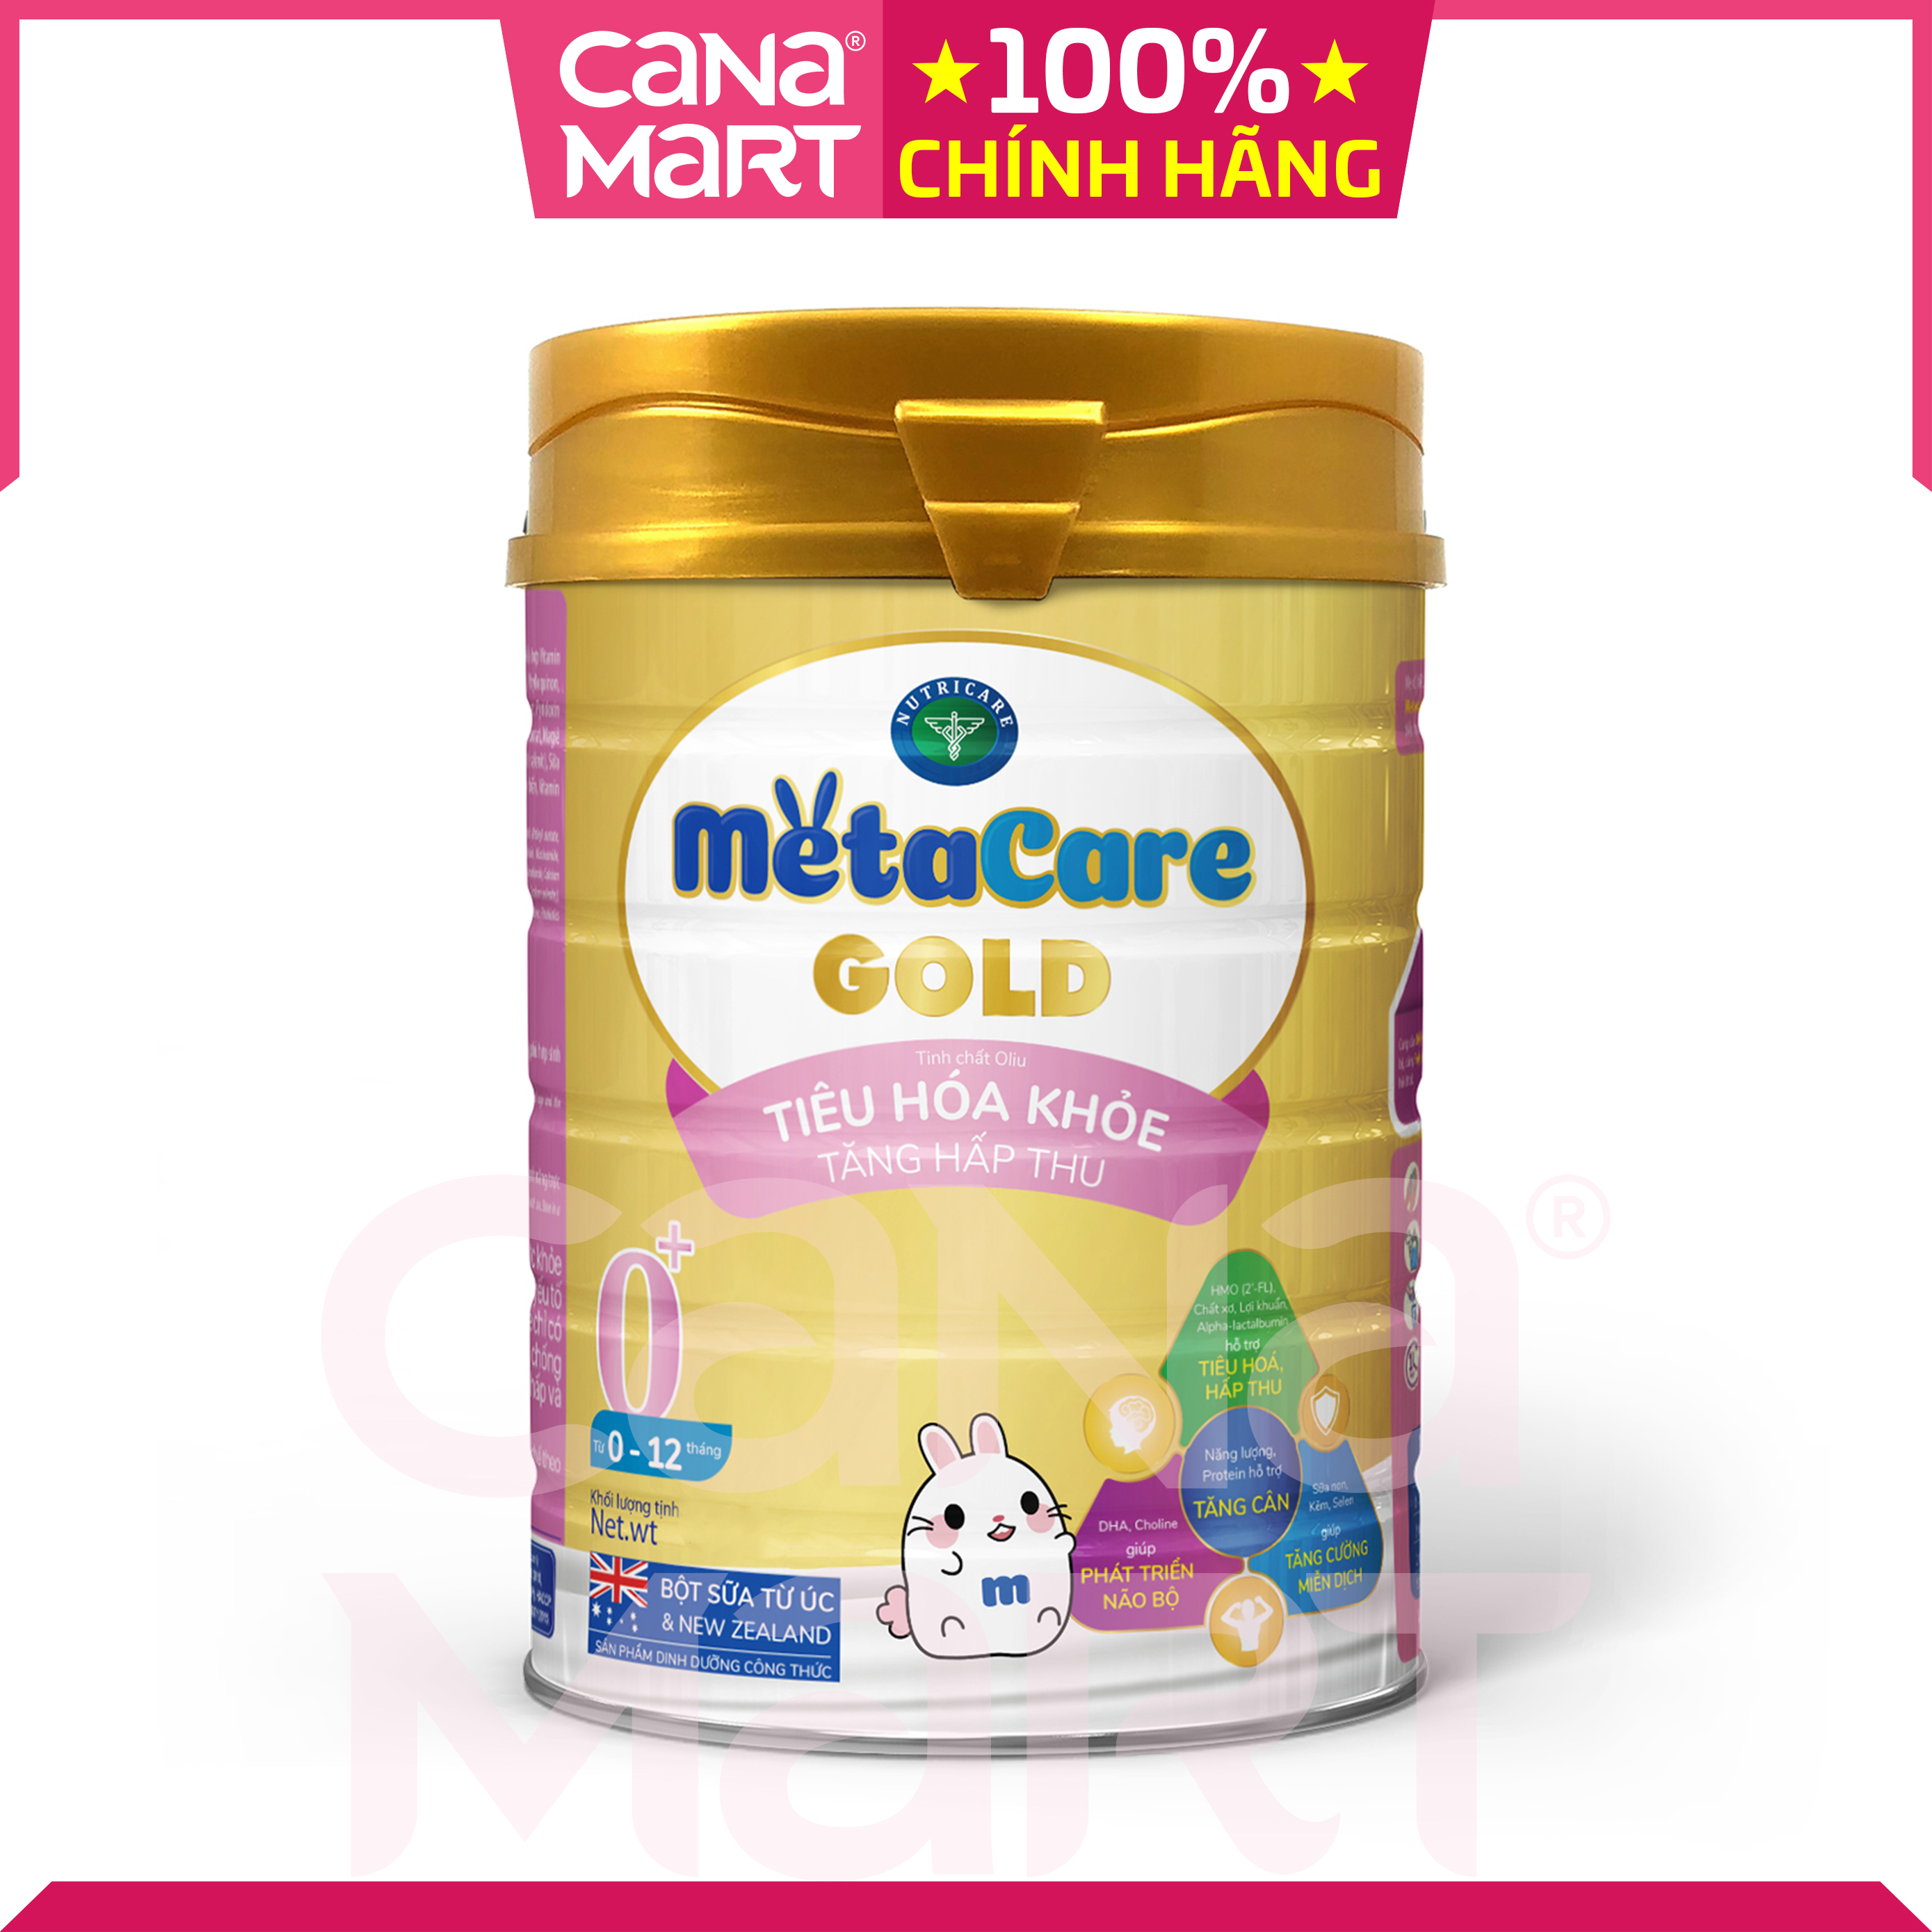 Sữa bột tốt cho bé Nutricare MetaCare Gold 0+, hỗ trợ tiêu hóa hấp thu, tăng cường miễn dịch, thông minh khỏe mạnh (800g)